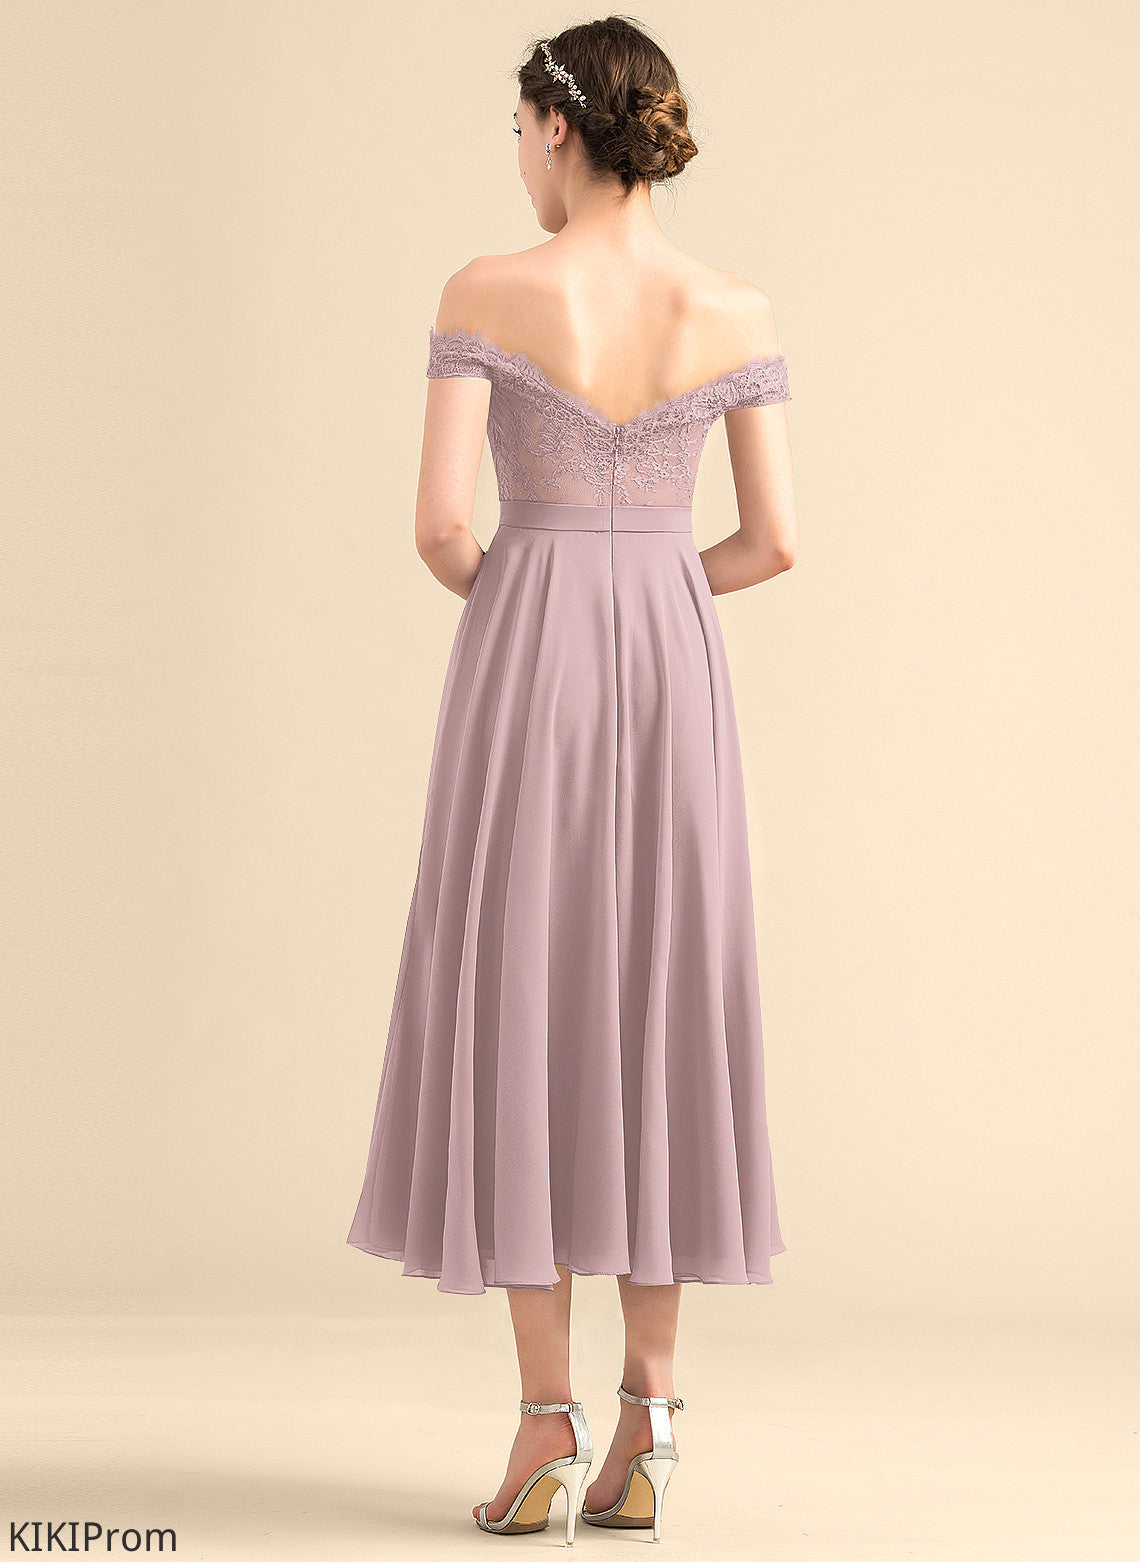 Silhouette Length Tea-Length Sequins Embellishment Neckline Fabric A-Line Off-the-Shoulder Beading Jimena Bridesmaid Dresses